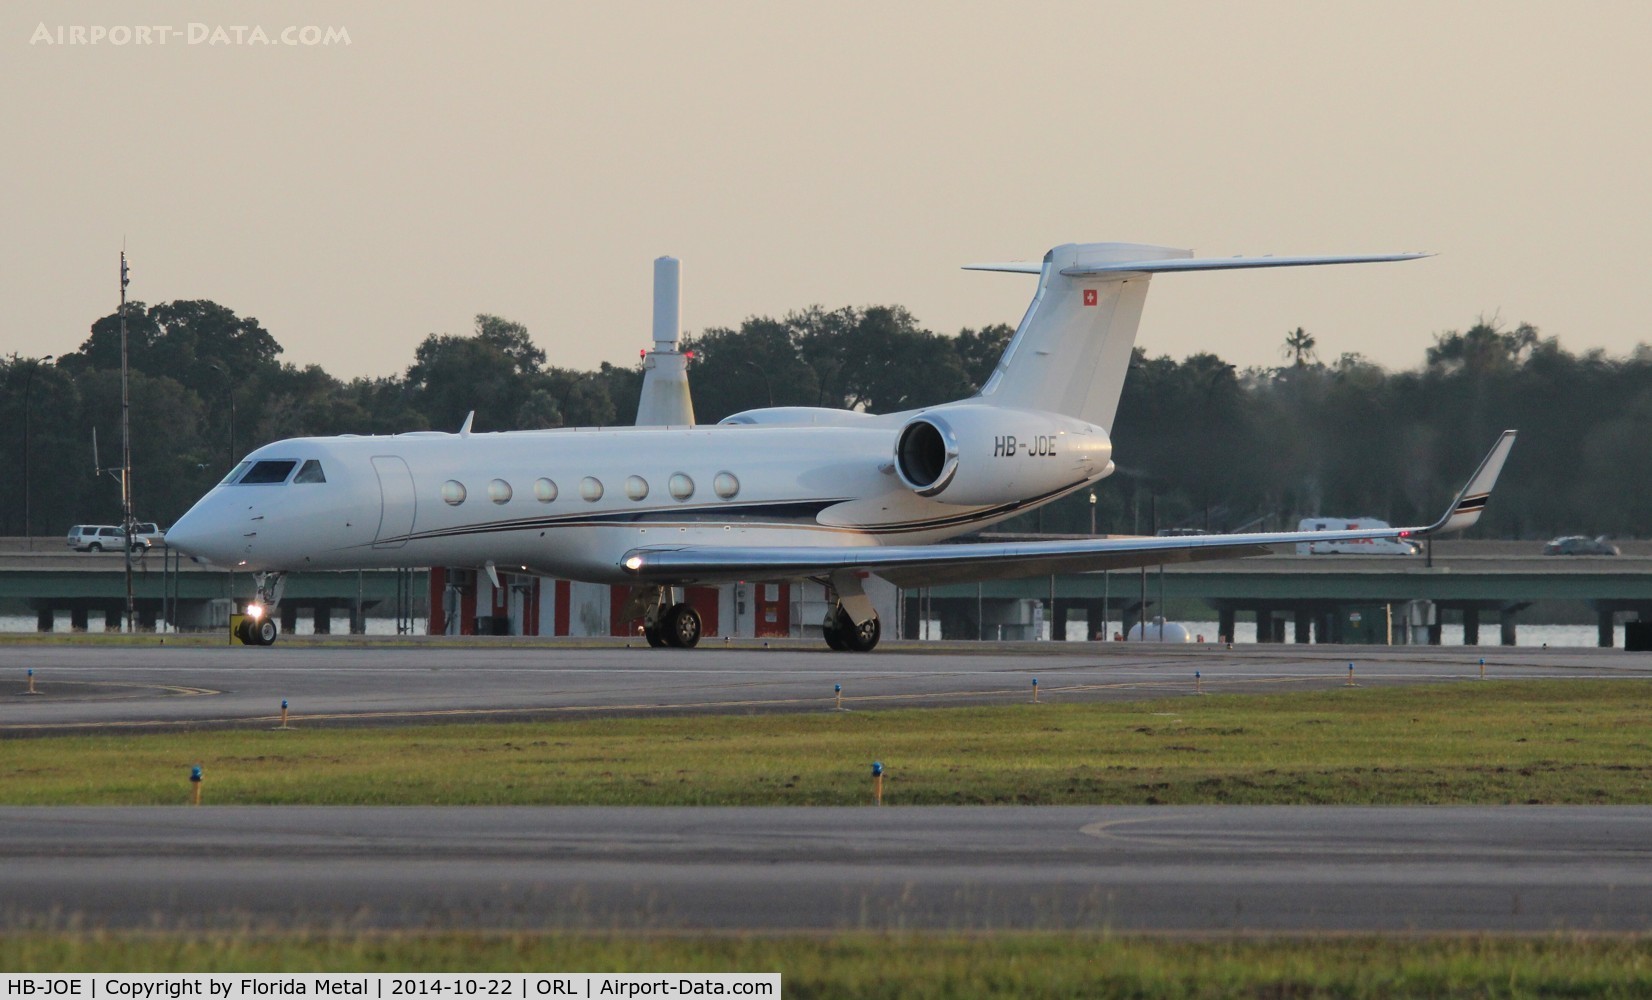 HB-JOE, 2008 Gulfstream Aerospace GV-SP (G550) C/N 5220, Gulfstream 550